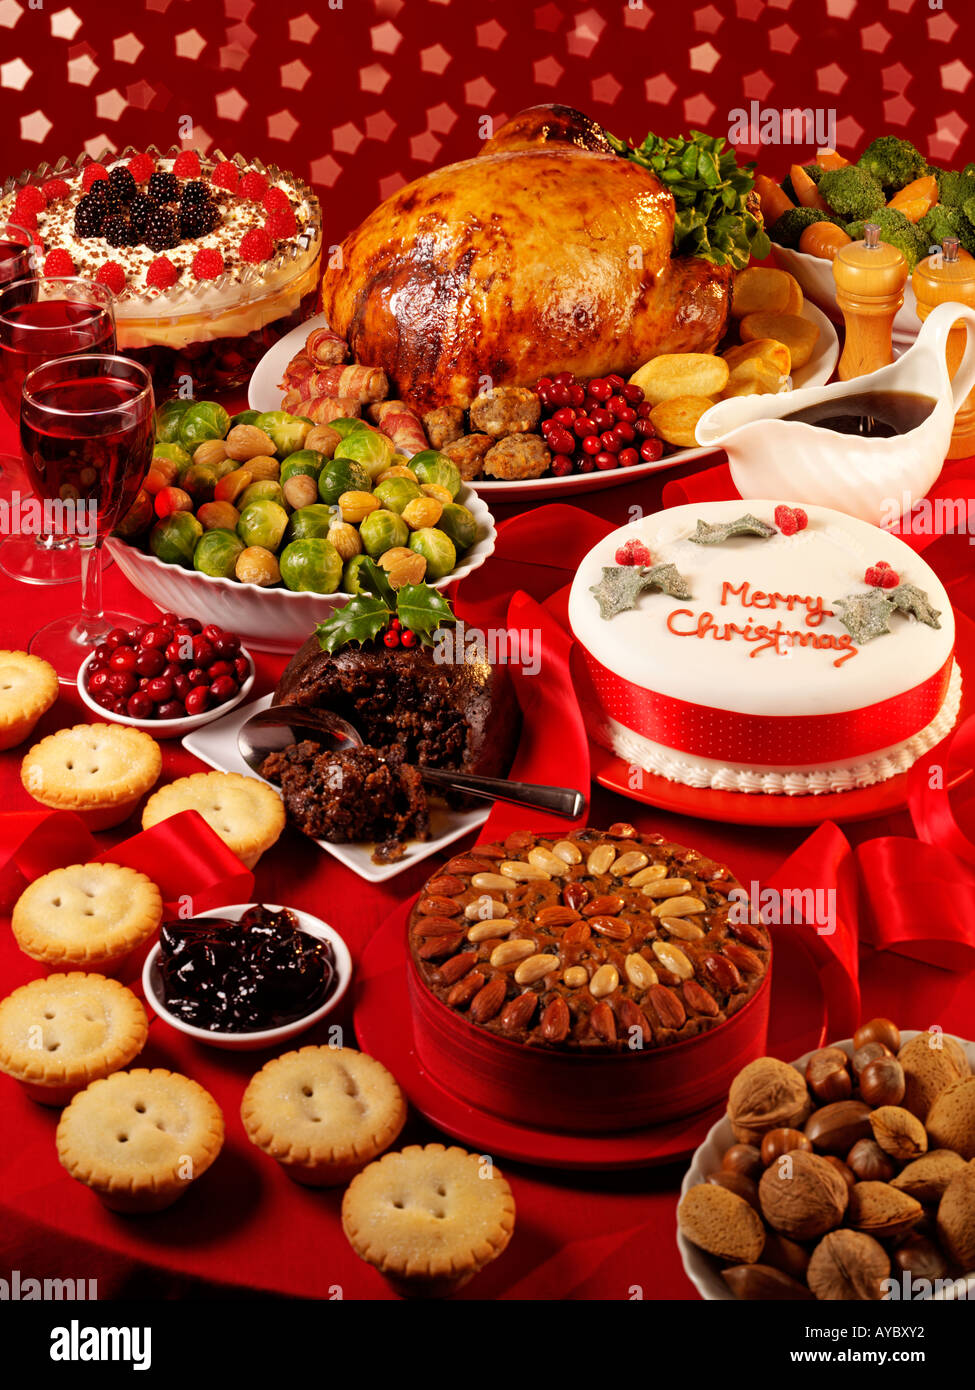 TRADITIONAL CHRISTMAS FOOD Stock Photo - Alamy